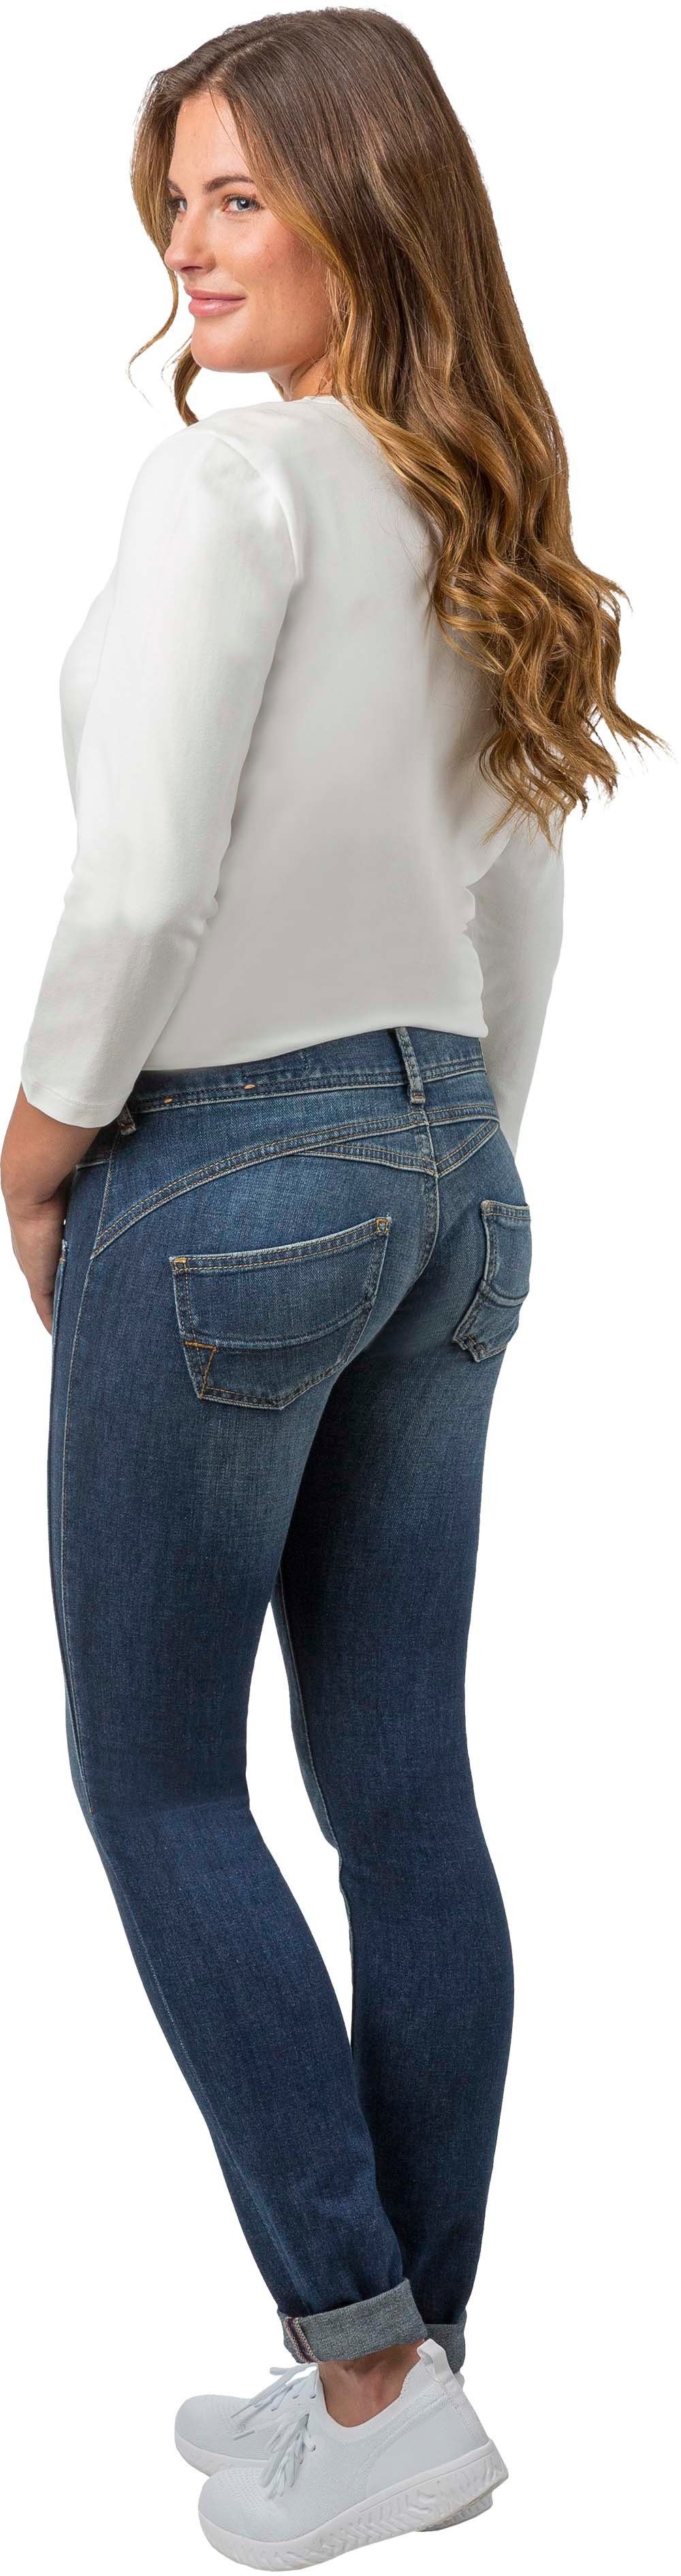 CASHMERE BIO-BAUMWOLLE GILA HERRLICHER MIT TOUCH SLIM JEANS 5-Pocket-Jeans Herrlicher